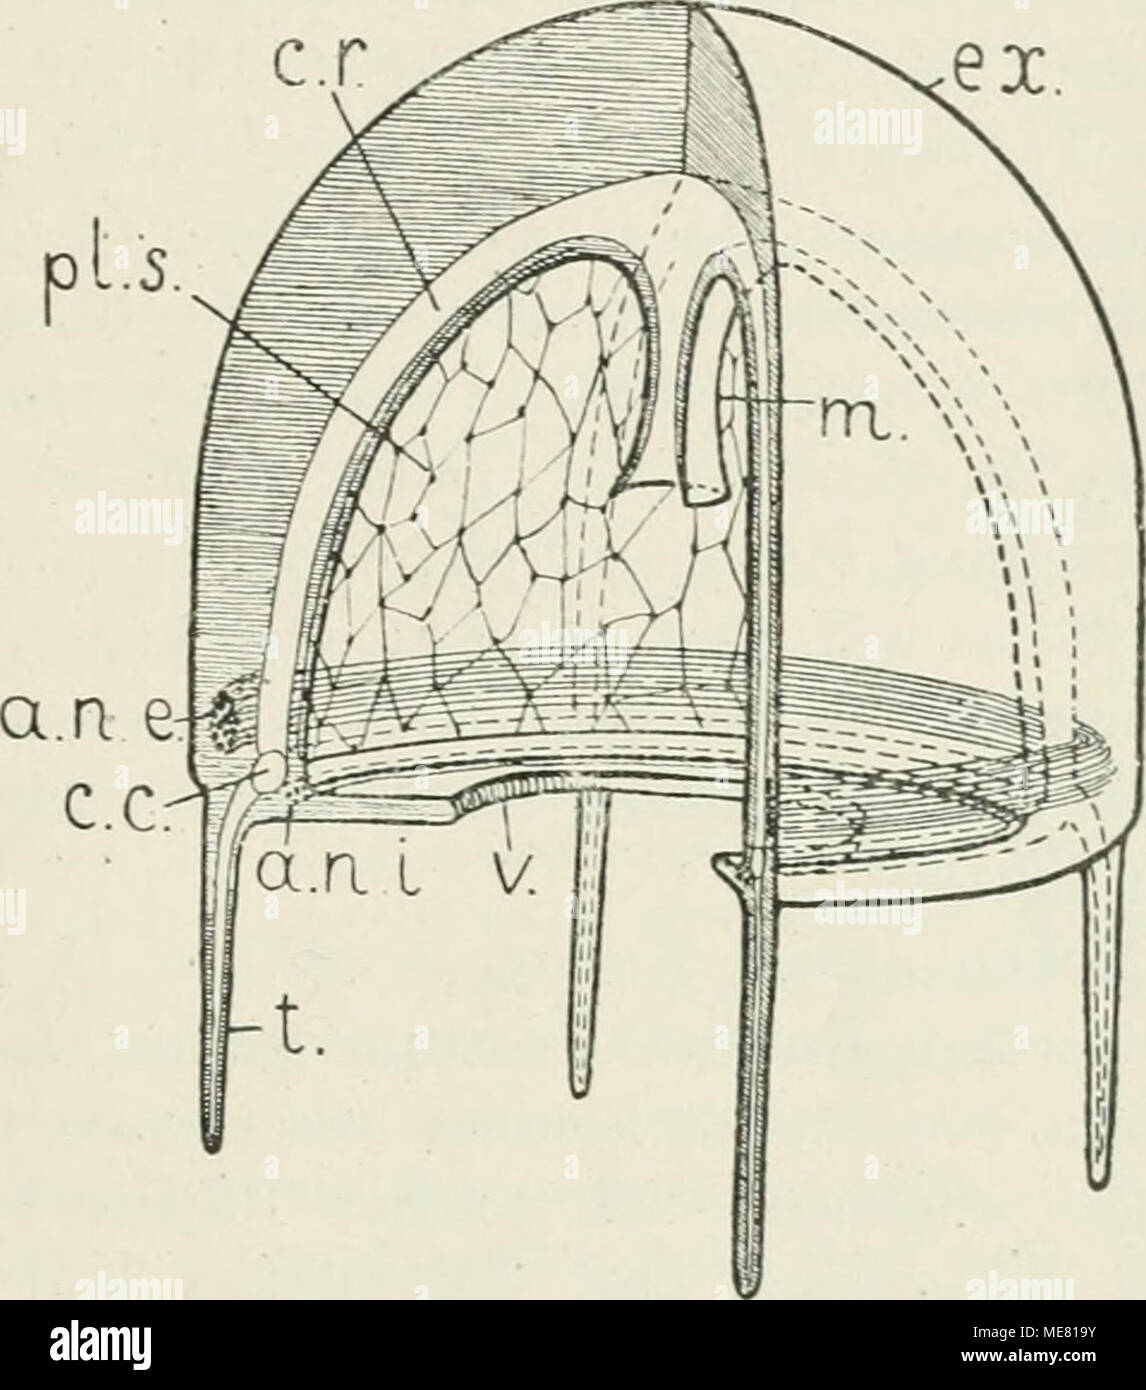 . Die Leitungsbahnen im Nervensystem der wirbellosen Tiere . Das Nervensystem einer Hydromeduse. Abge- ändert nach BüTSCHLi (1912), Fig. 314. Der linke vordere Quadrant des Tieres durch zwei Radialschnitte, die bis zirr Achse gehen, herausgeschnitten. a. n. e. = annulus nervosus externus, äußerer Nervenring. a. n. i. = annulus nervosus internus, innerer Nervenring. c. c. = canahs circularis. c. r. = canalis radialis. ex. = exumbrella. m. = manubrium. pl. s. = plexus subumbrellaris. t. = tentaculuni. V. = velum. BoEHM (1878) beobachtete zer- streute Ganglienzellen im Xervenringe des Glockenrand Stock Photo